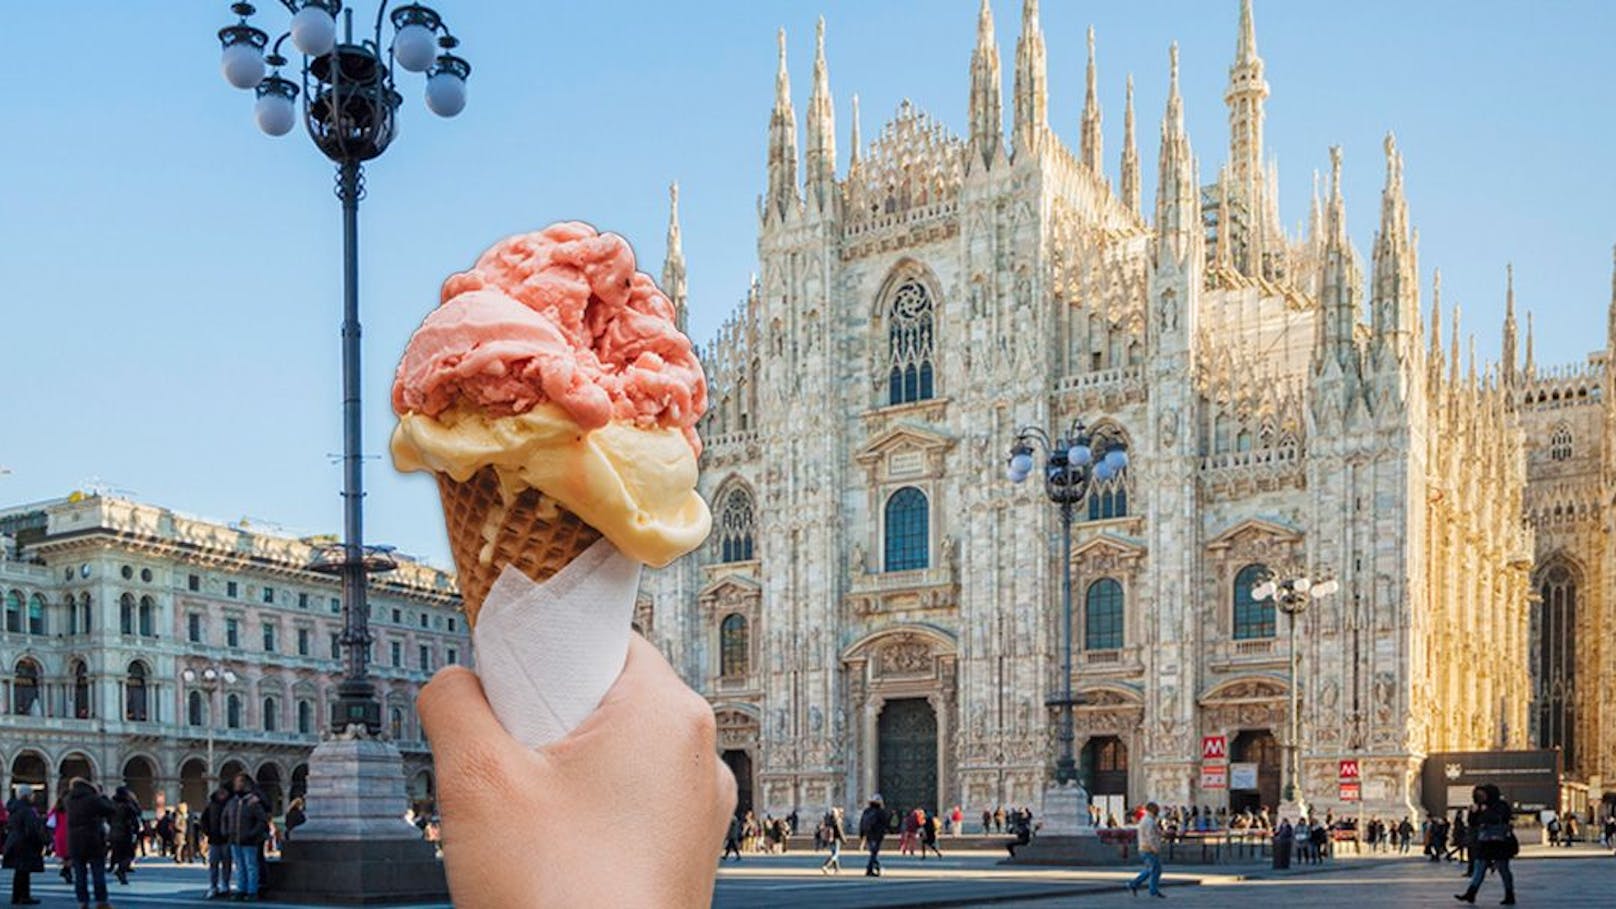 Mailand will Eisessen nach Mitternacht verbieten